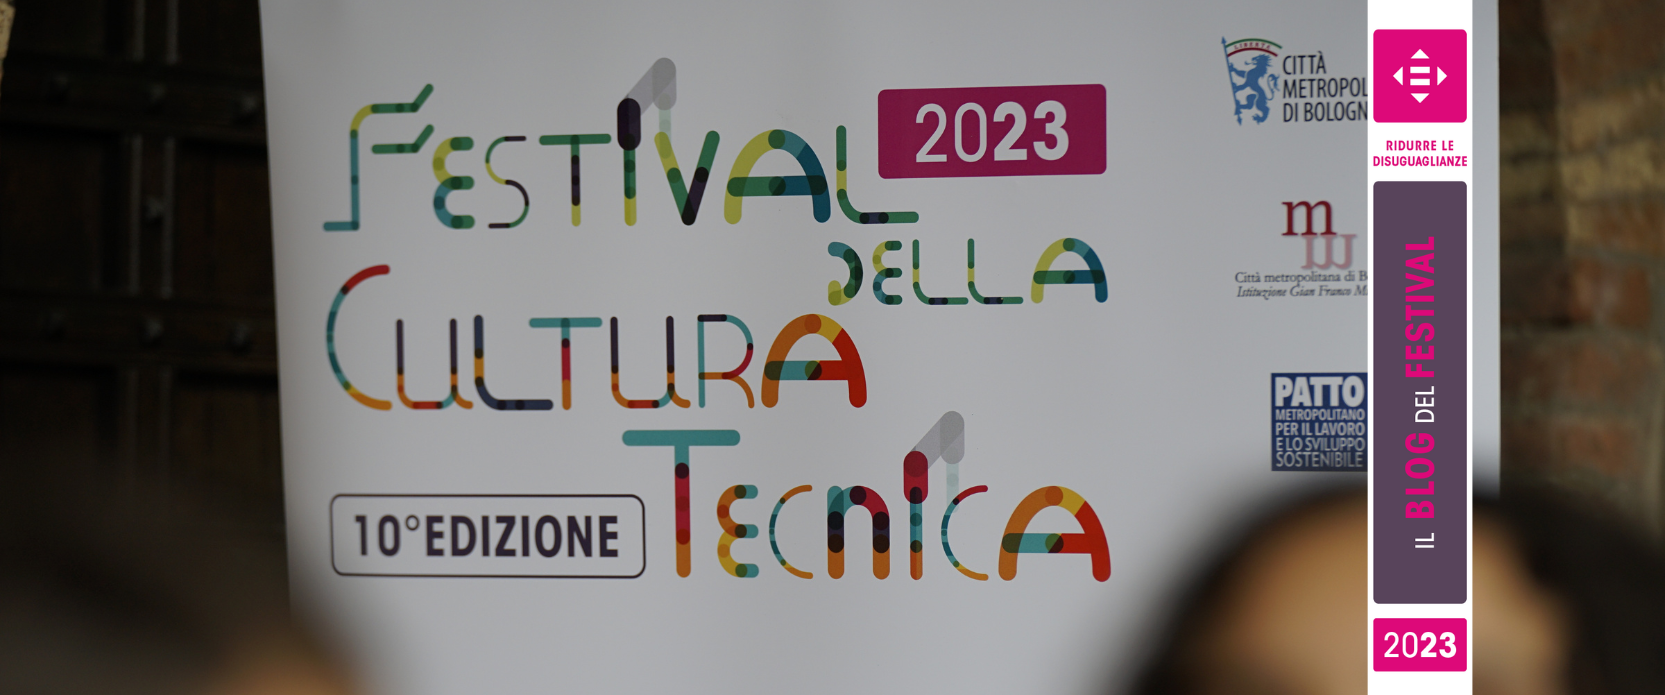 Festival della Cultura tecnica 2023: il programma della sesta settimana